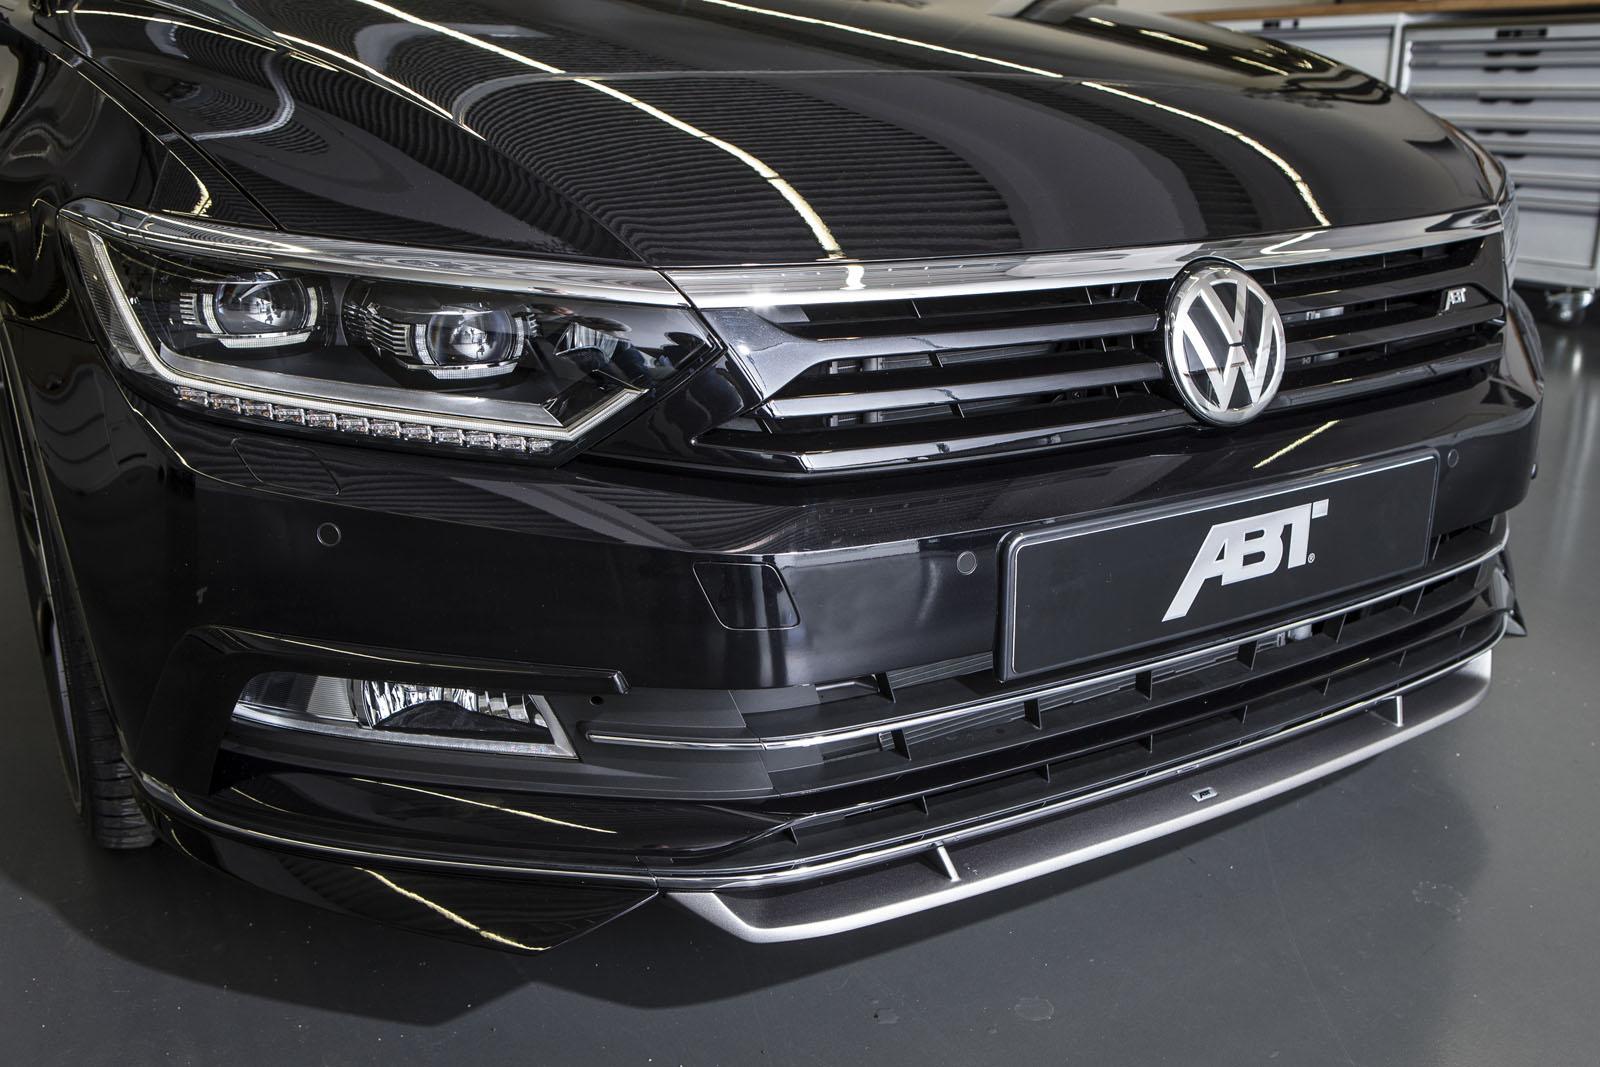 2015 Volkswagen Passat 2.0 BiTDI Tuned to 300 HP: B8 Torque